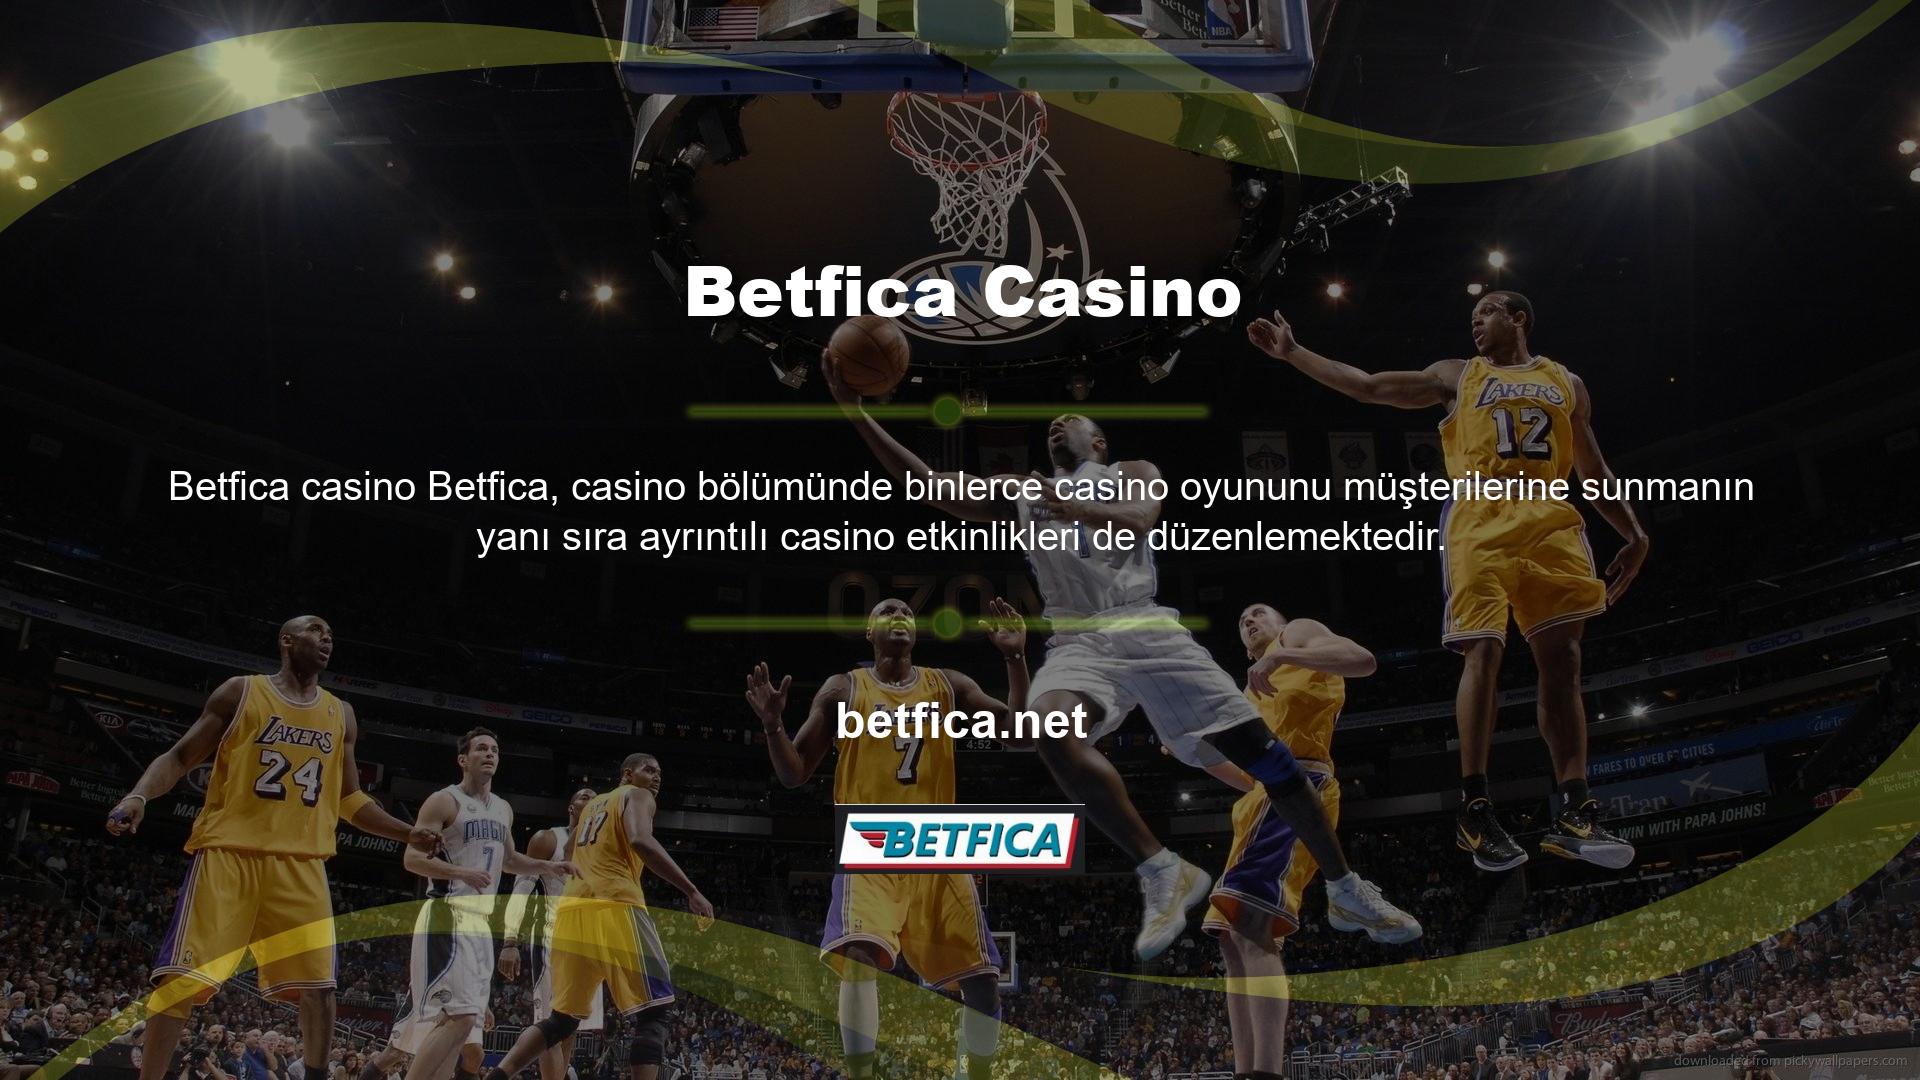 Betfica ayrıca casino turnuvaları da düzenlemektedir